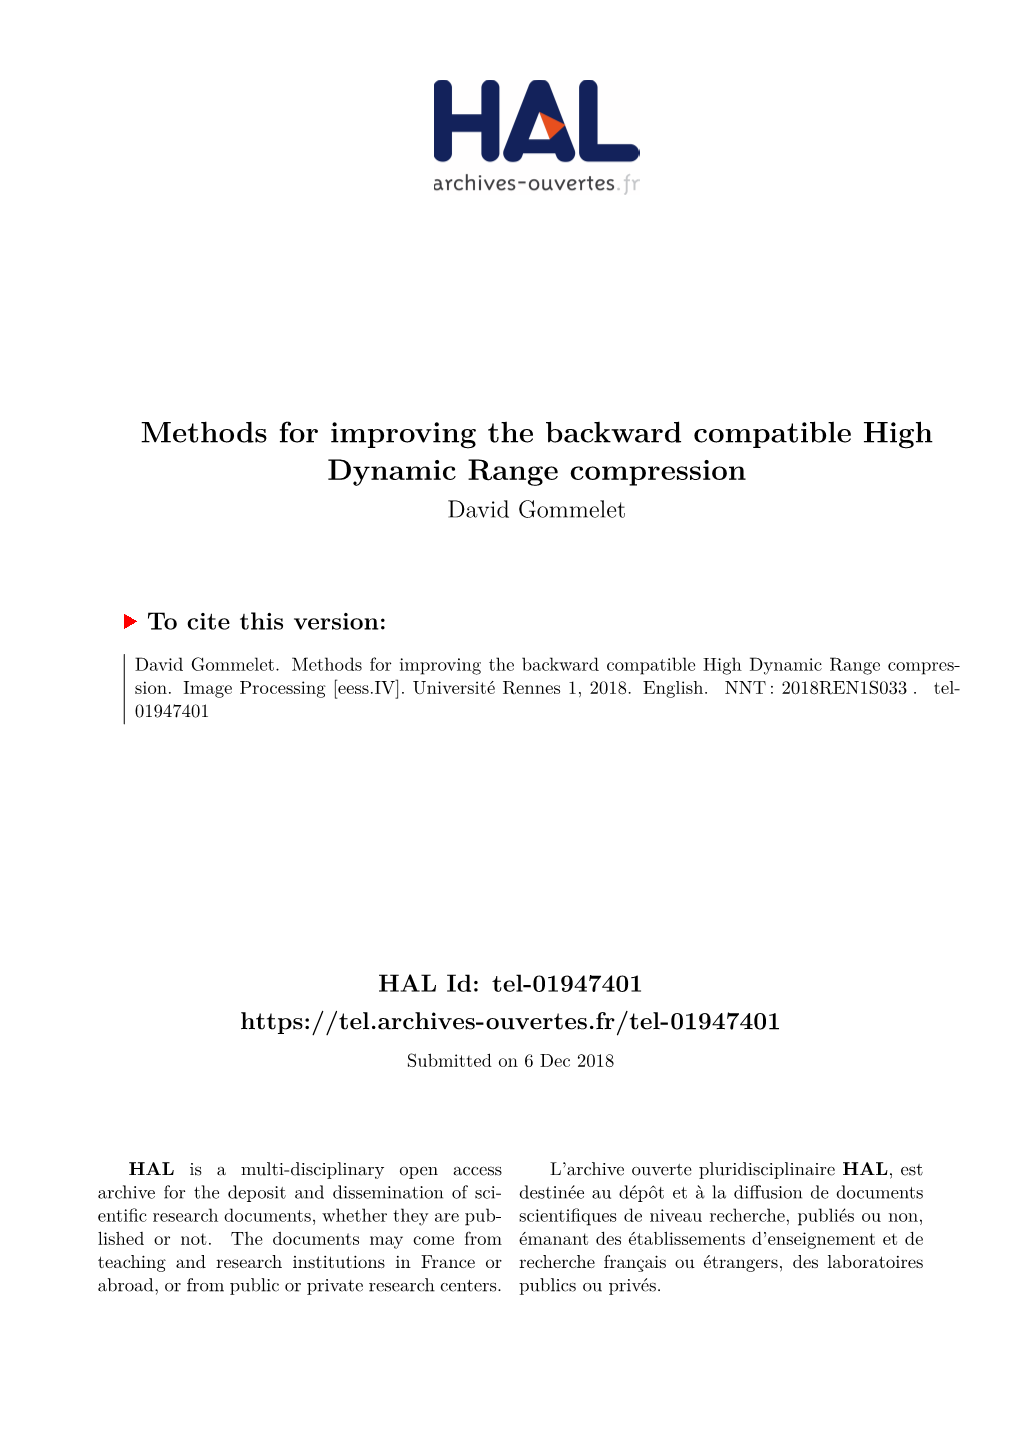 Methods for Improving the Backward Compatible High Dynamic Range Compression David Gommelet